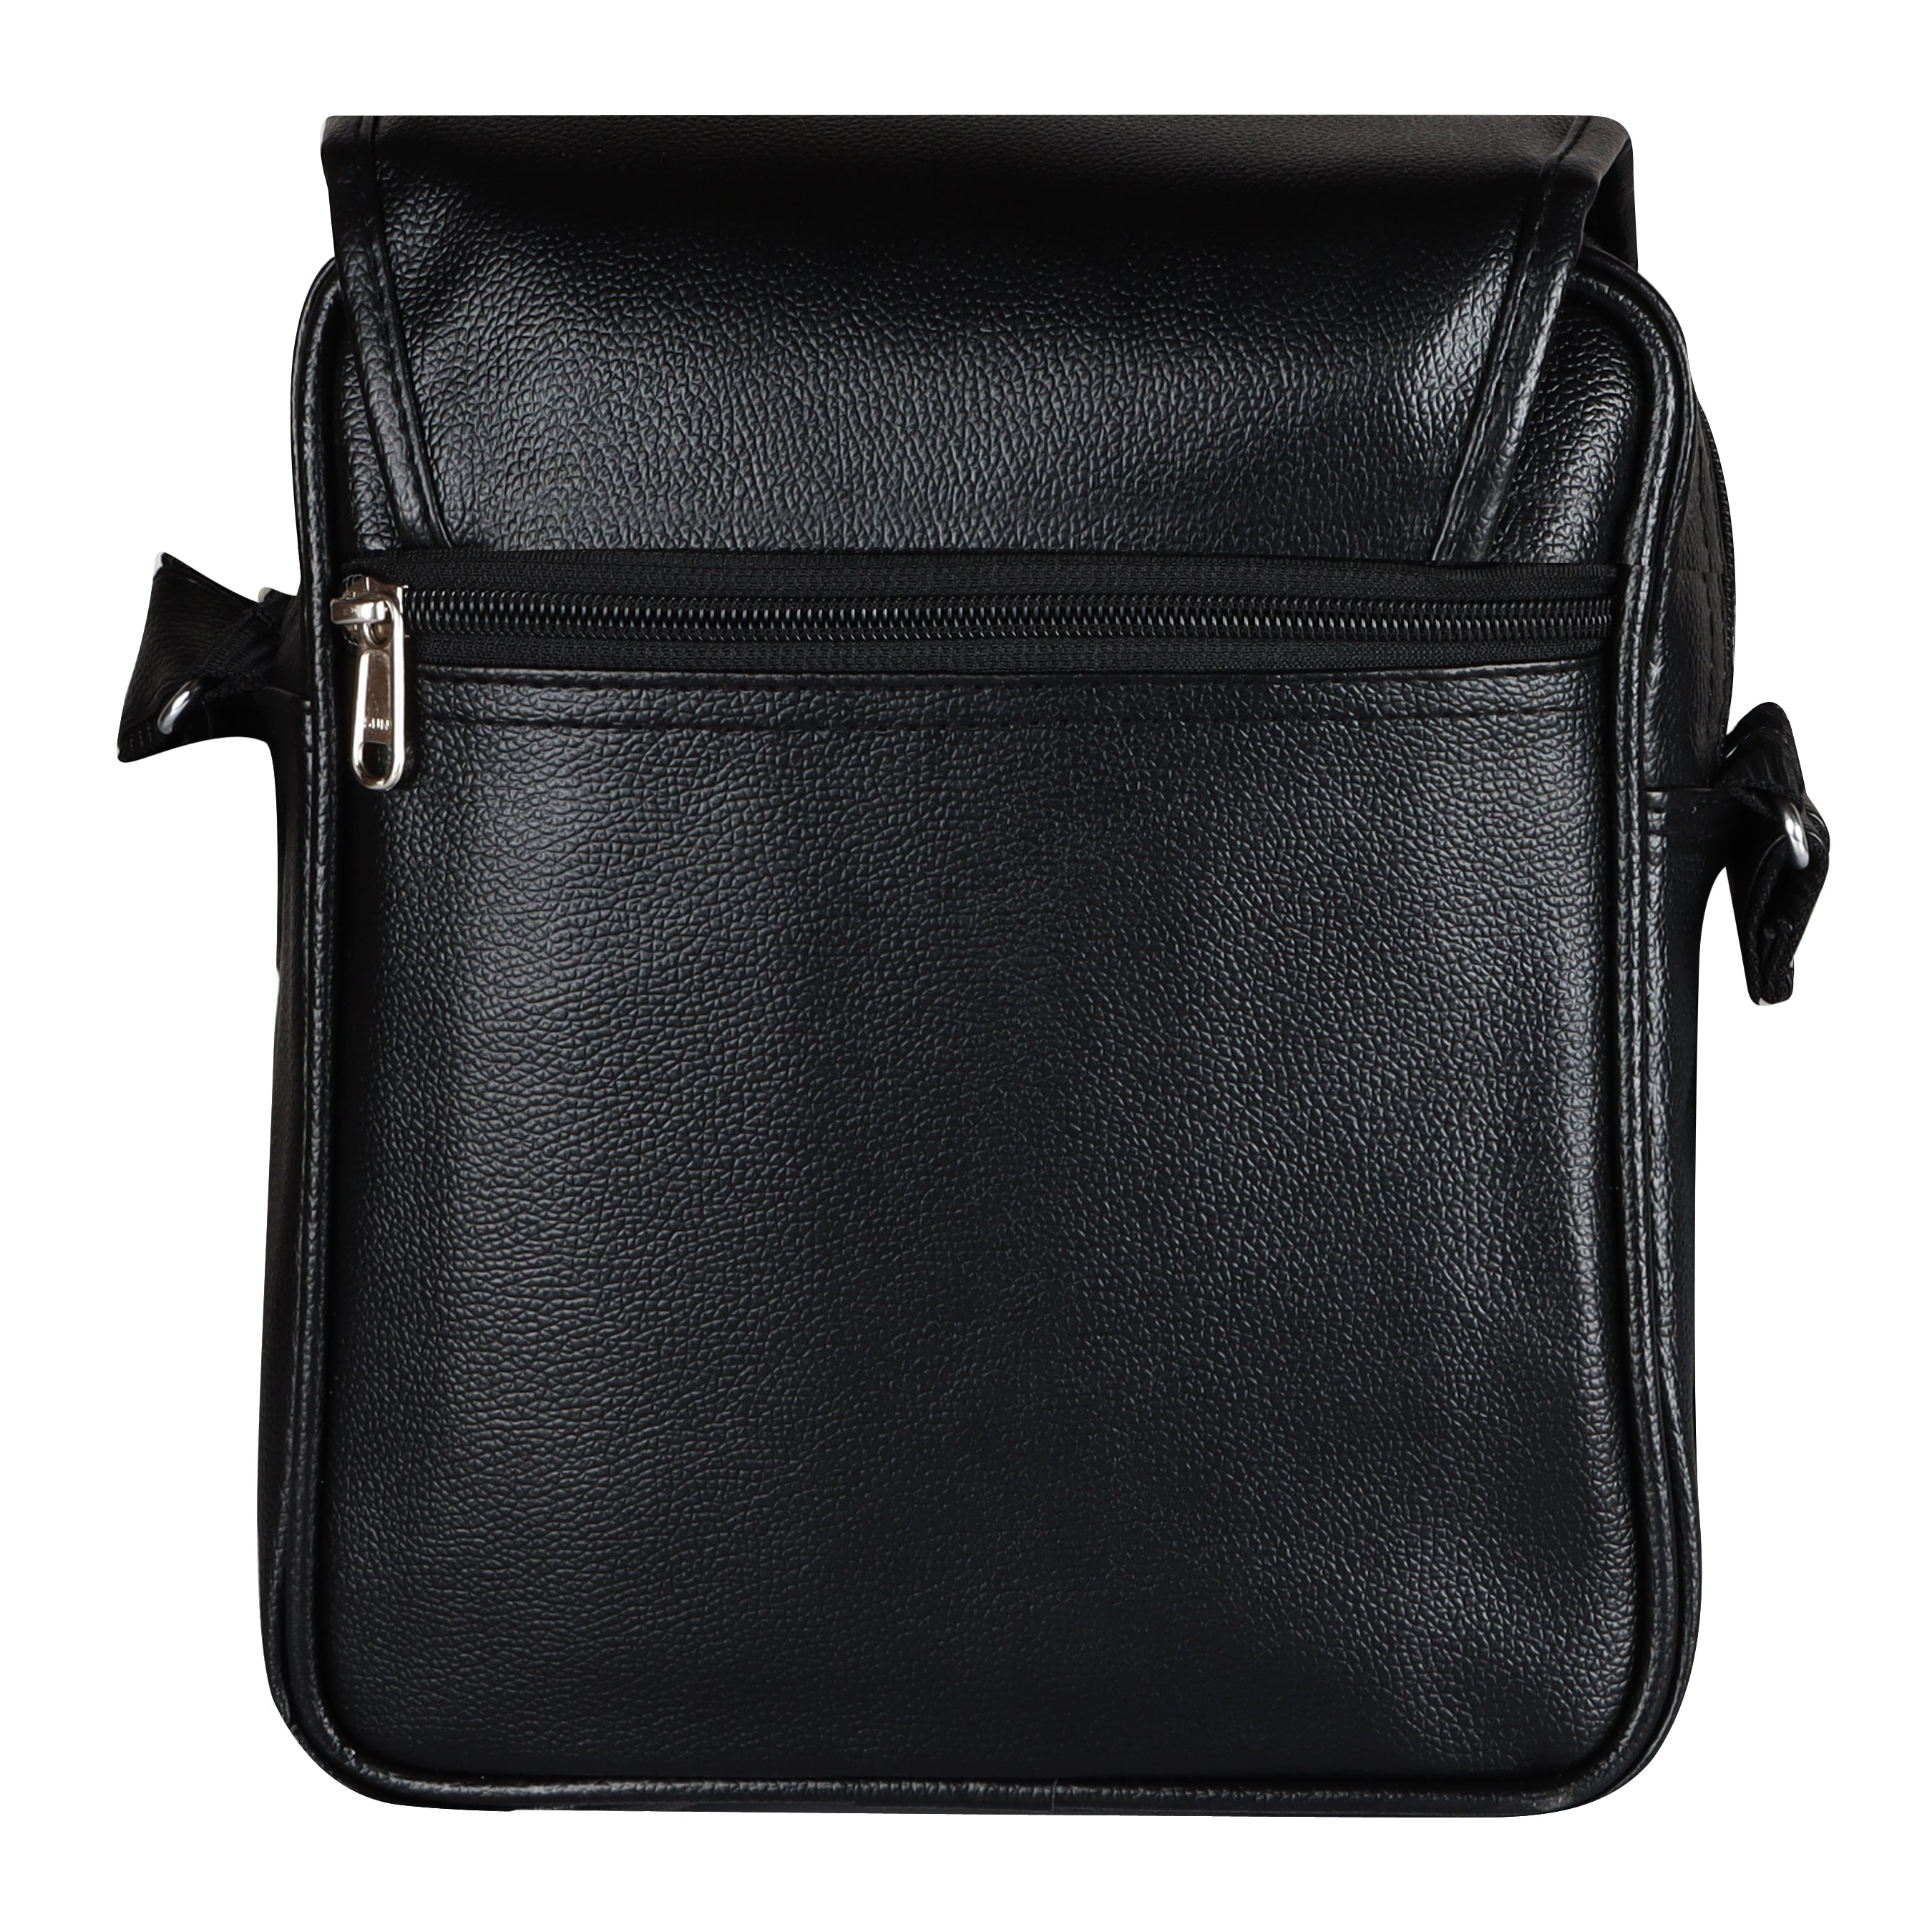 Jaxer Black Sling Bag for Men & Women - JXRSB107 - Jainx Store